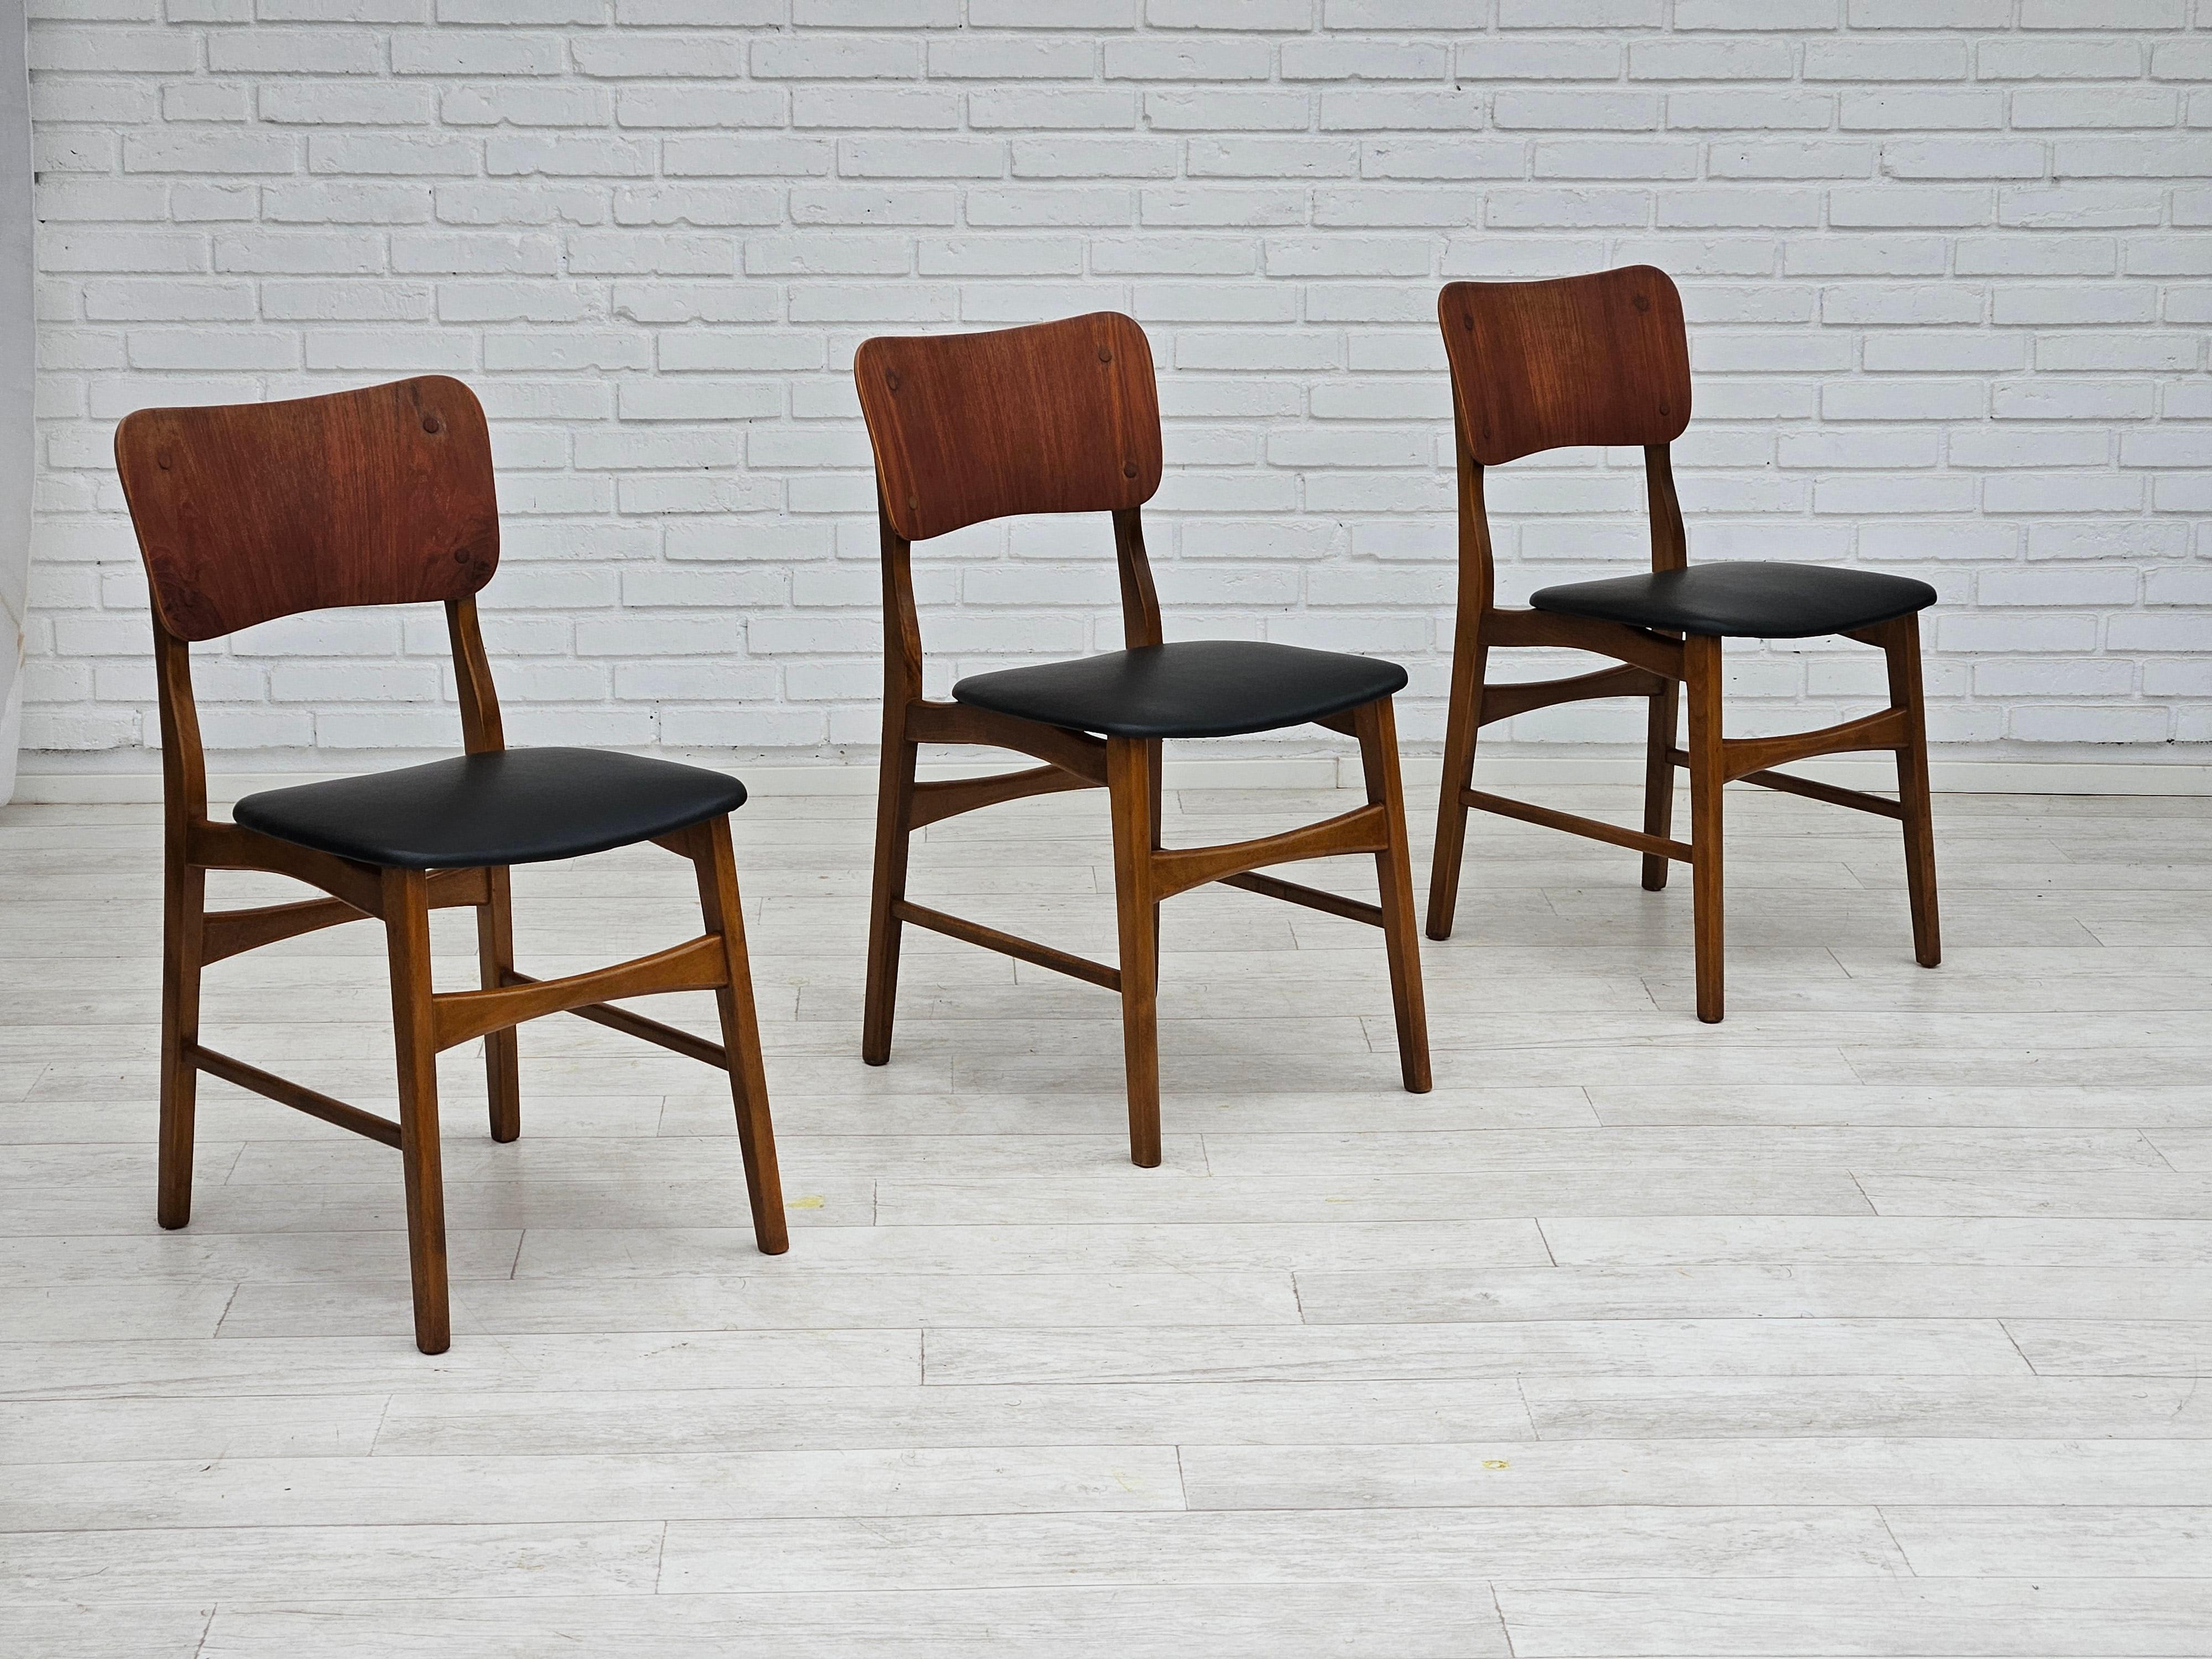 Des années 1960, design danois d'Ib Kofod Larsen, ensemble de 3 chaises de salle à manger modèle 62. Entièrement rénové - rembourré en cuir noir par un artisan. Bois de teck et bois de hêtre. Fabriqué par un fabricant de meubles danois, Boltinge